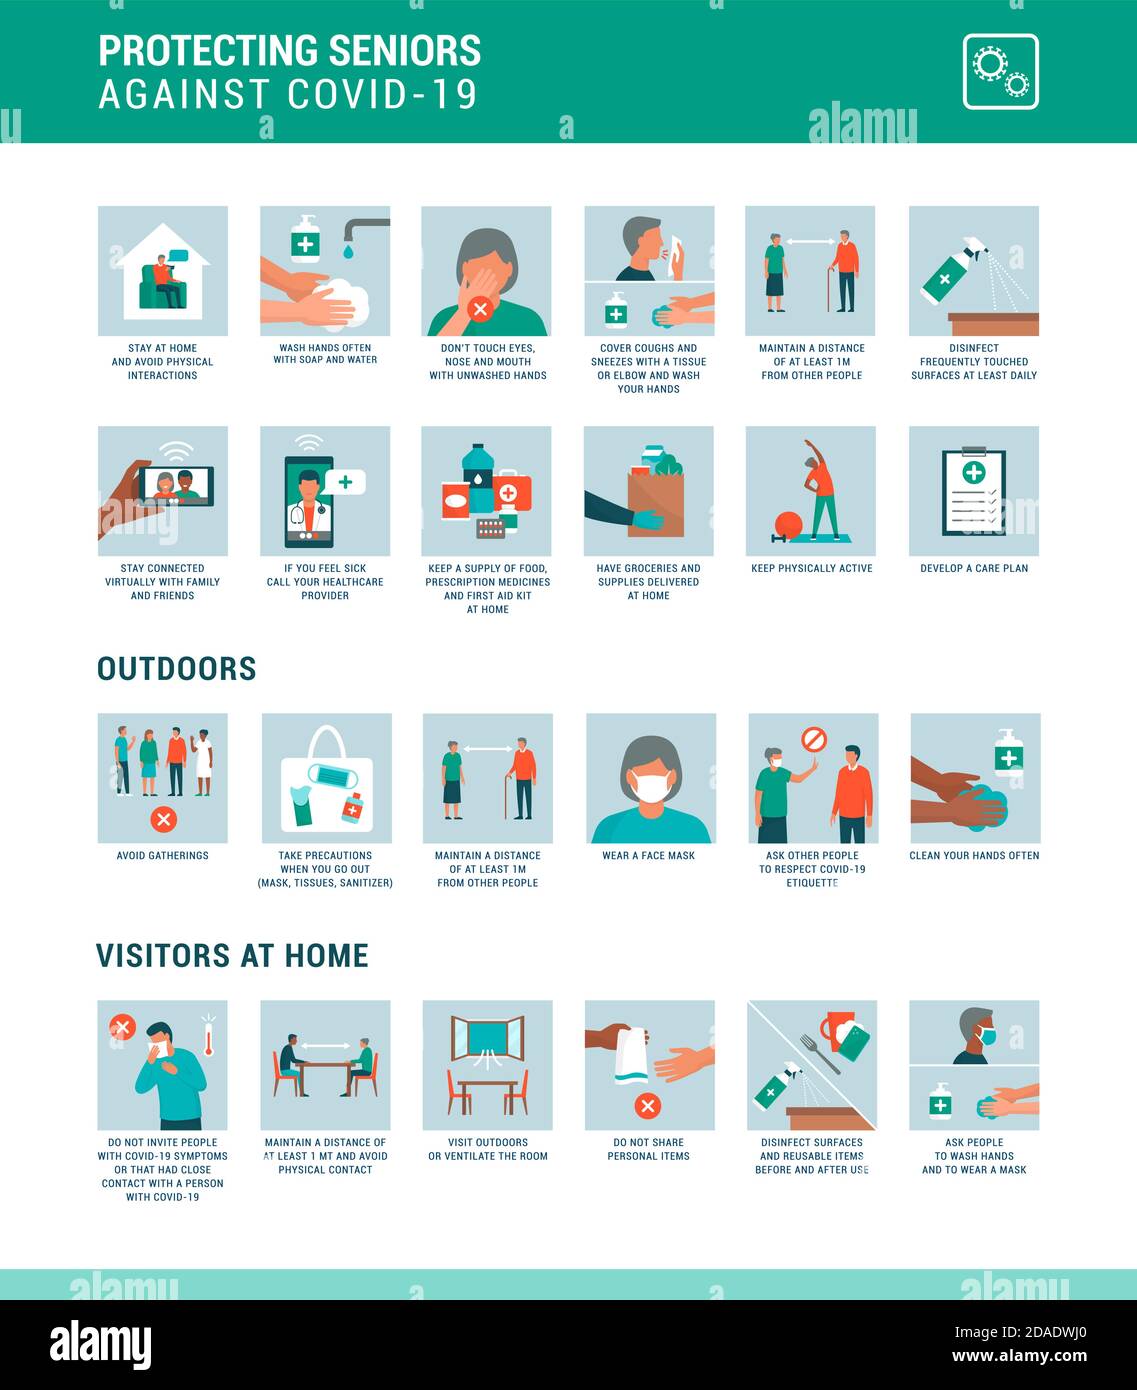 Protezione degli anziani contro il coronavirus covid-19 infografica con icone: Consigli generali sulla sicurezza, all'aperto e quando i visitatori sono a casa Illustrazione Vettoriale